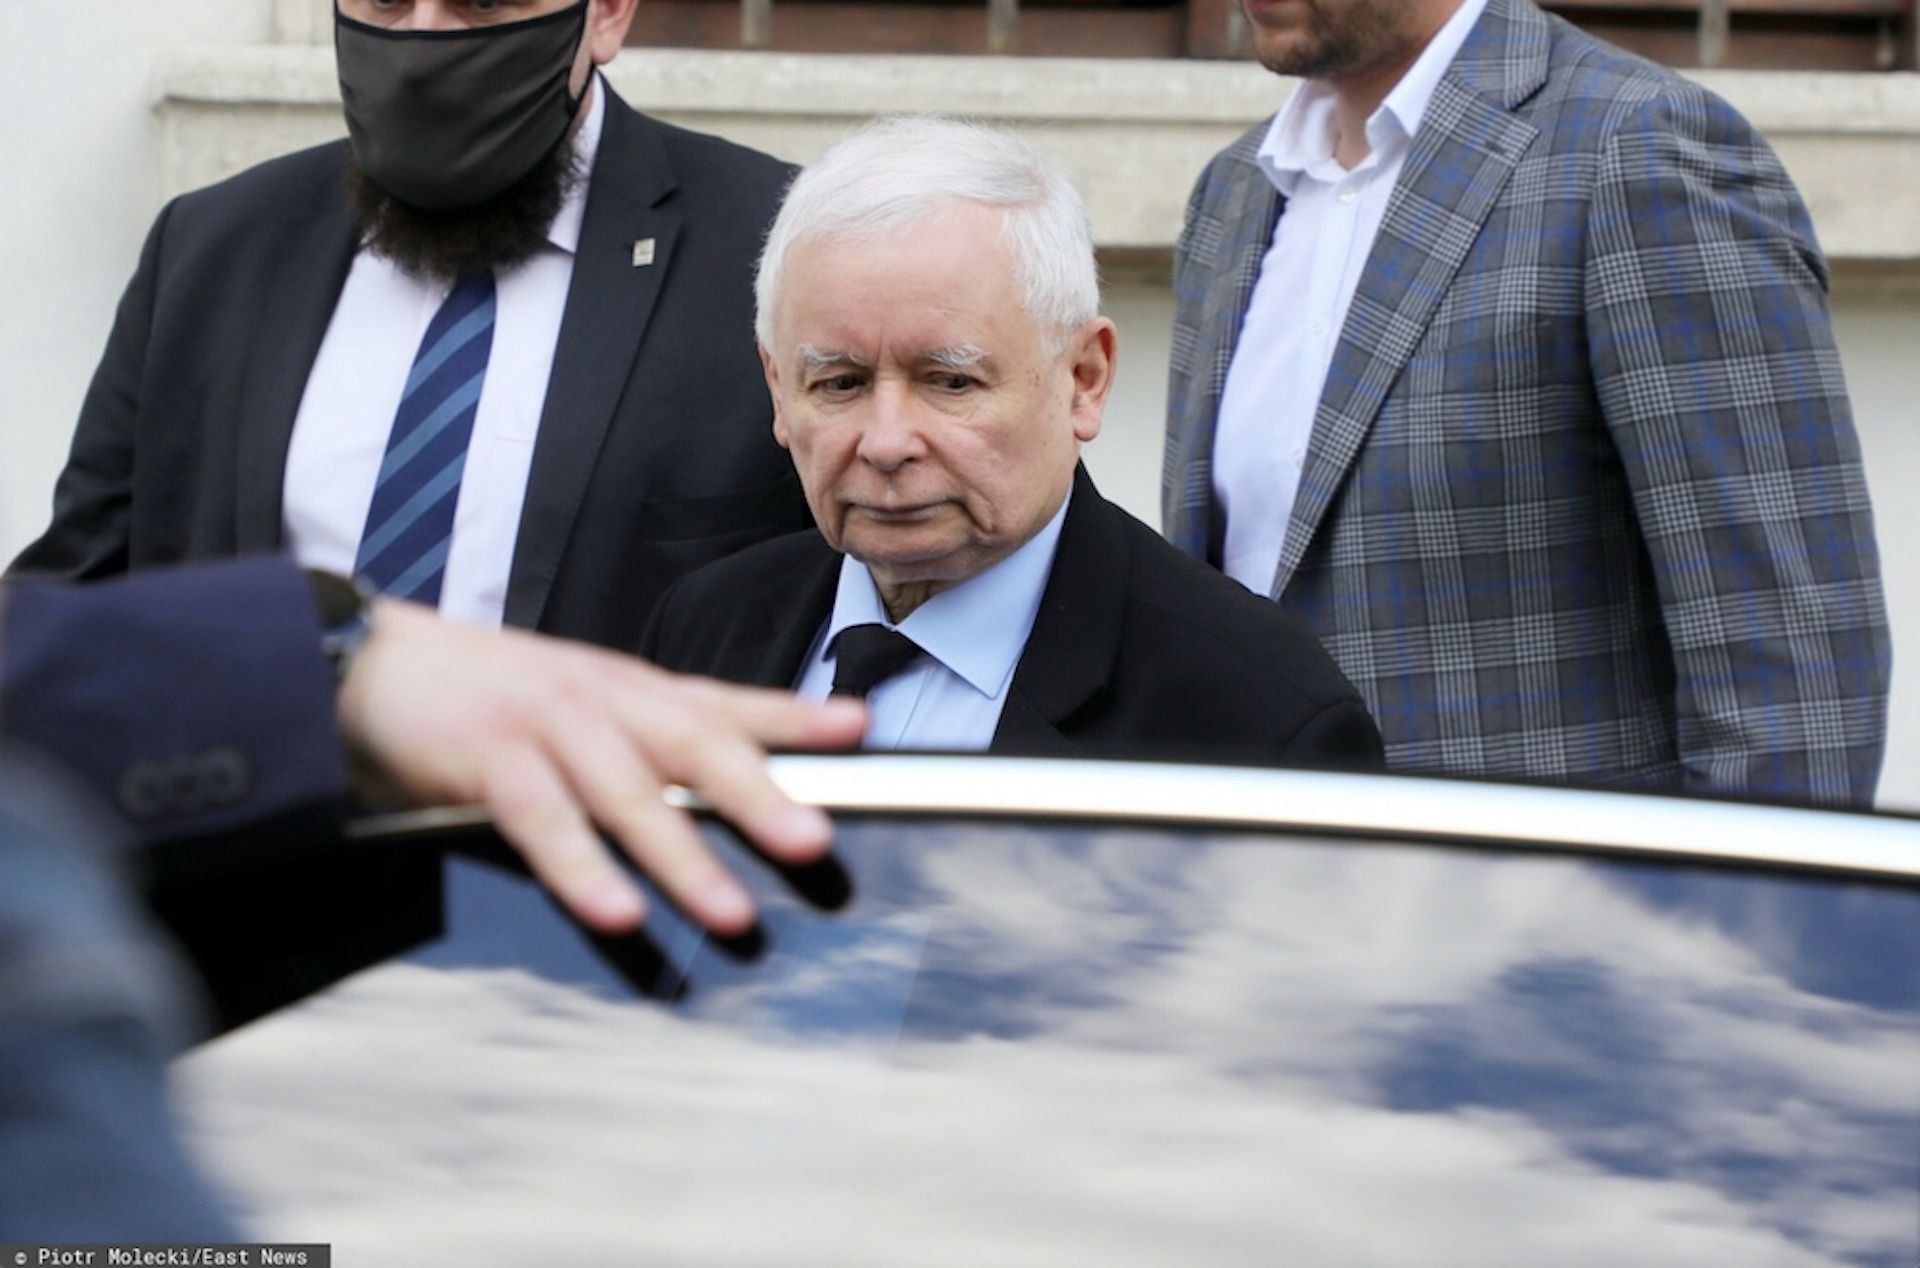 Nieoficjalne wiadomości wskazują, że Jarosław Kaczyński odejdzie z rządu Mateusza Morawieckiego